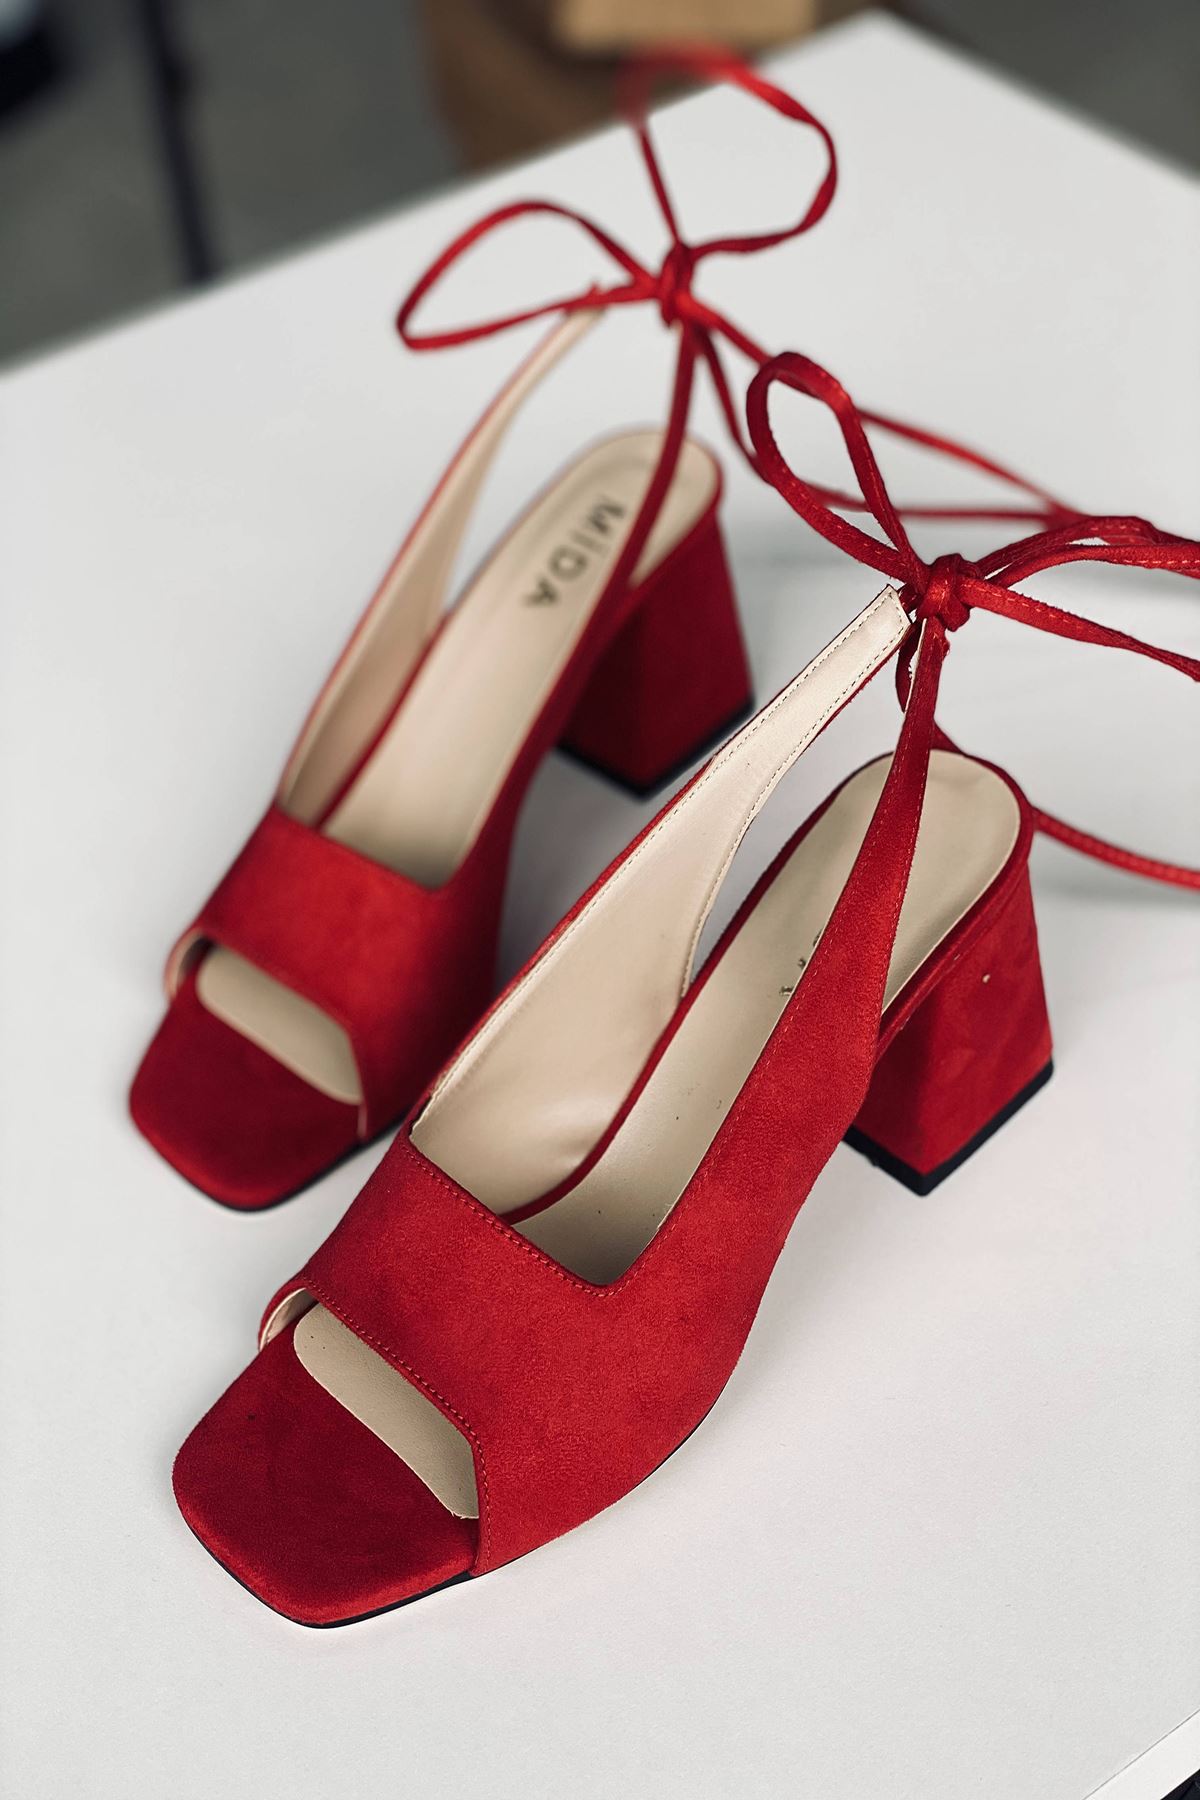 Mida Shoes Y710 Kırmızı Süet Topuklu Ayakkabı